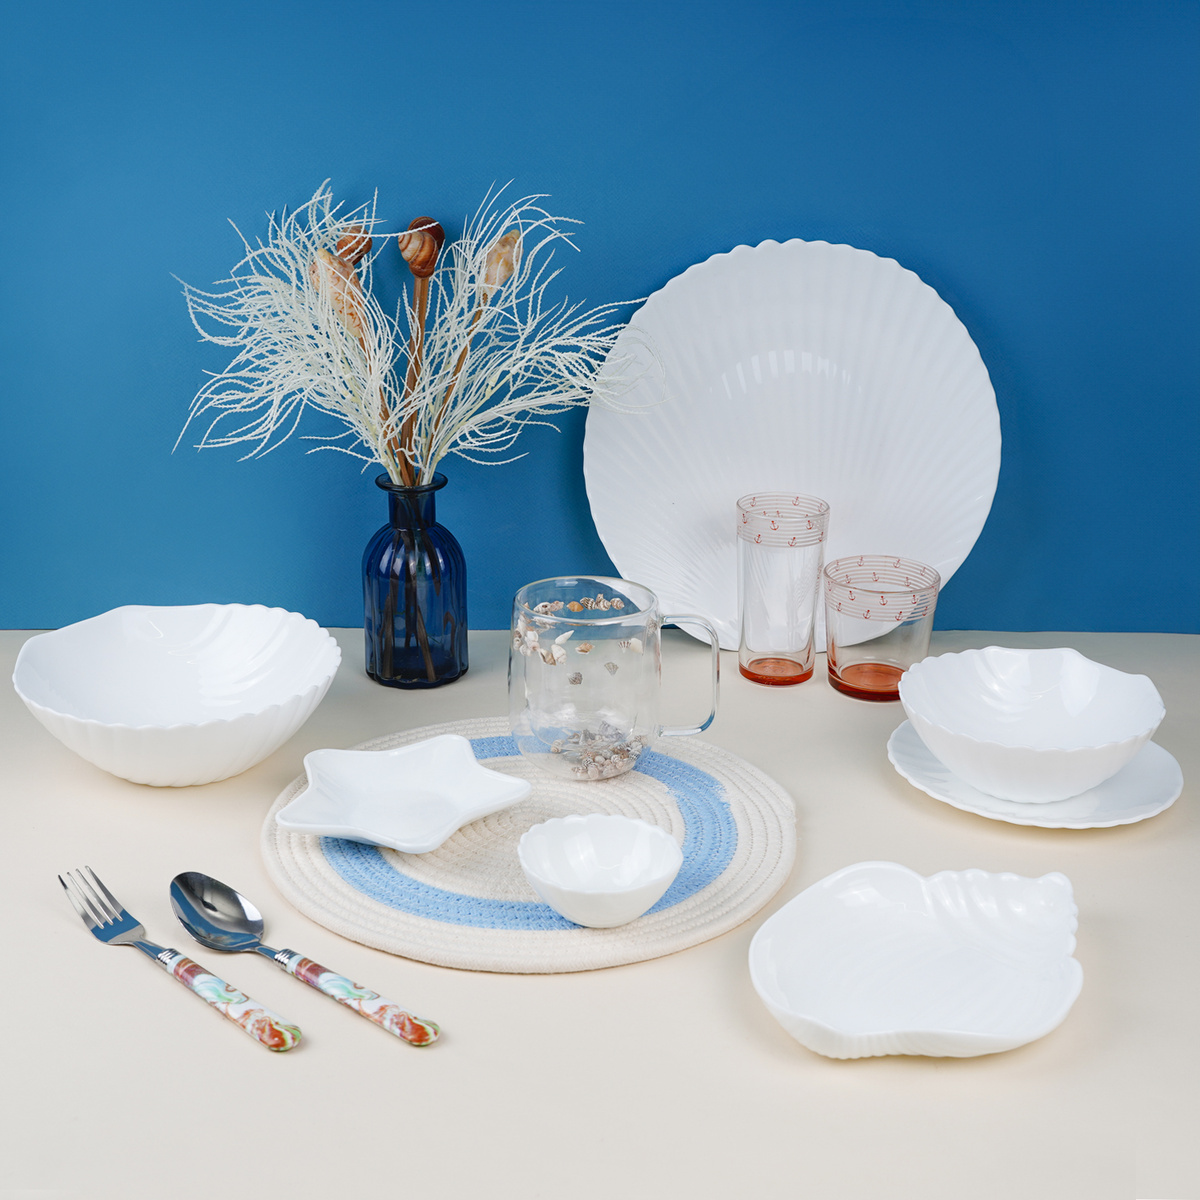 Оригинальные тарелки, блюдца, соусницы и салатники в форме морских ракушек 🐚, выполненные из белой керамики в минималистичном дизайне, подчеркнут Ваш утонченный вкус и чувство стиля 👇🏻 🌊Блюдо для